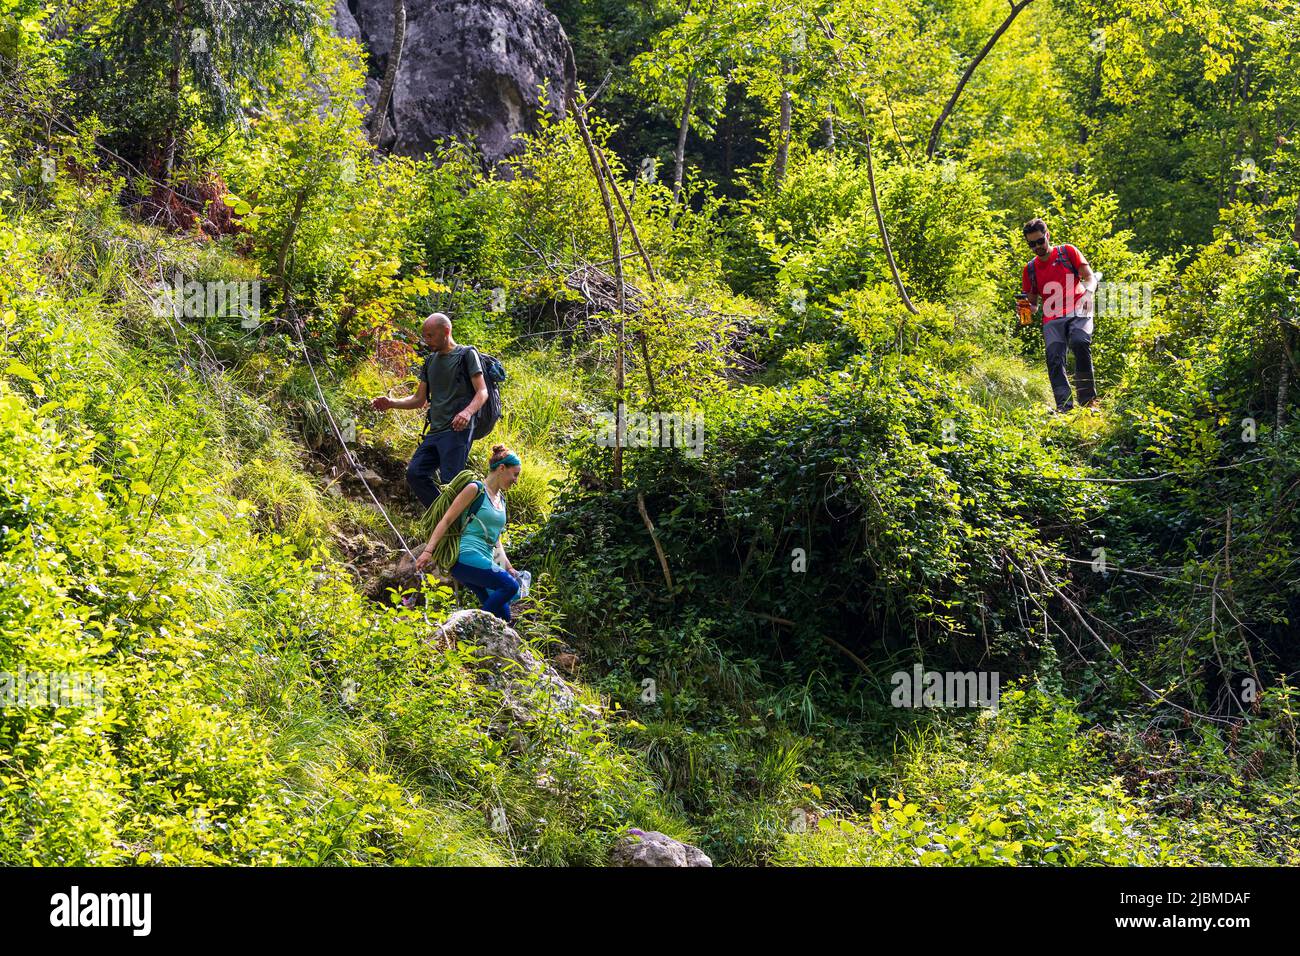 Italia Veneto Monte Grappa - Valle di Schievenin - Quero Vas - Aldo de escalada - Bastionata nord Foto de stock